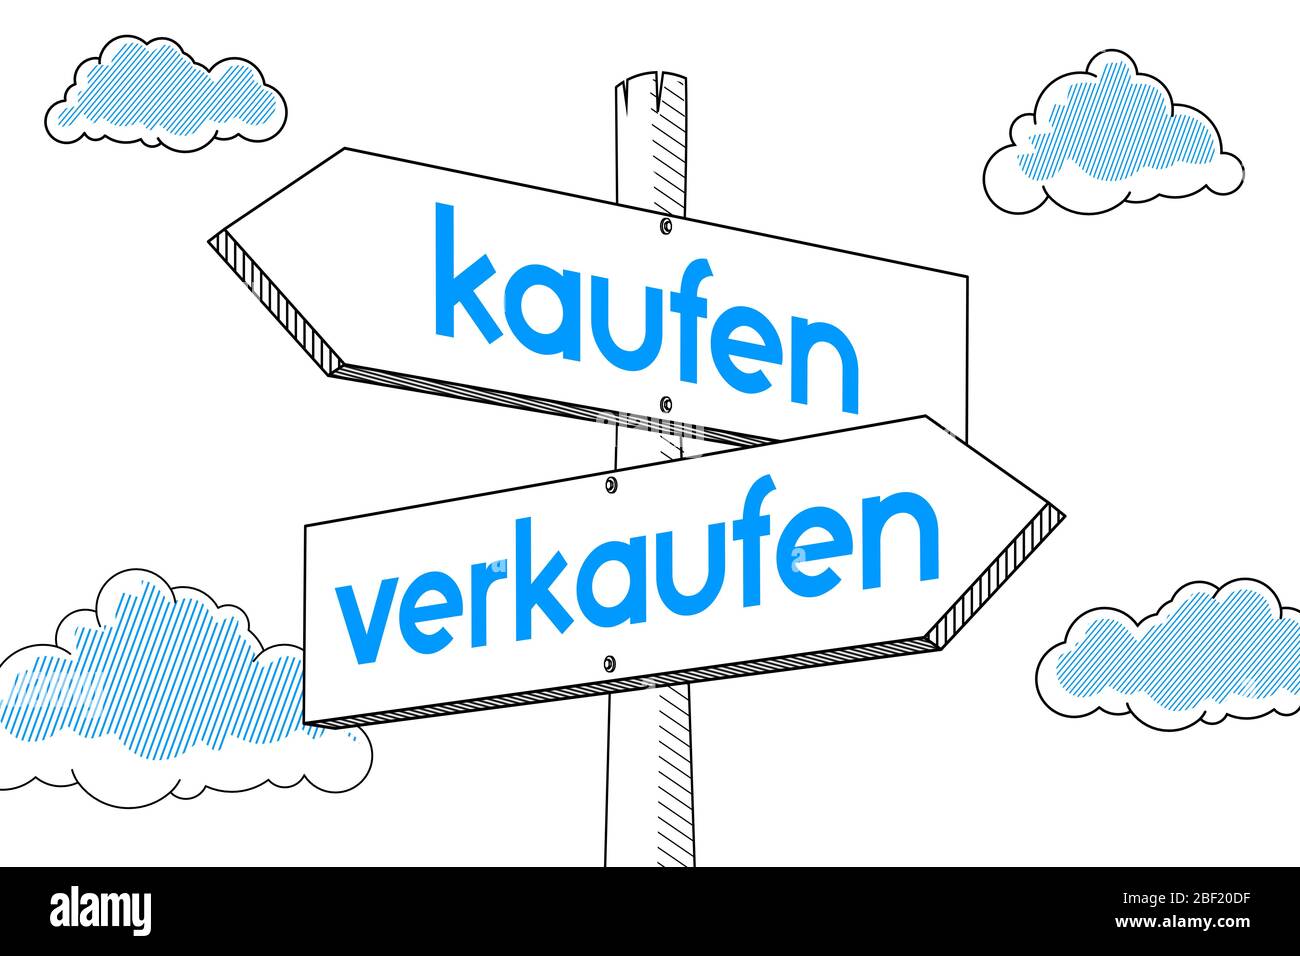 Kaufen, verkaufen (German)/ Buy, sell (English) - signpost Stock Photo